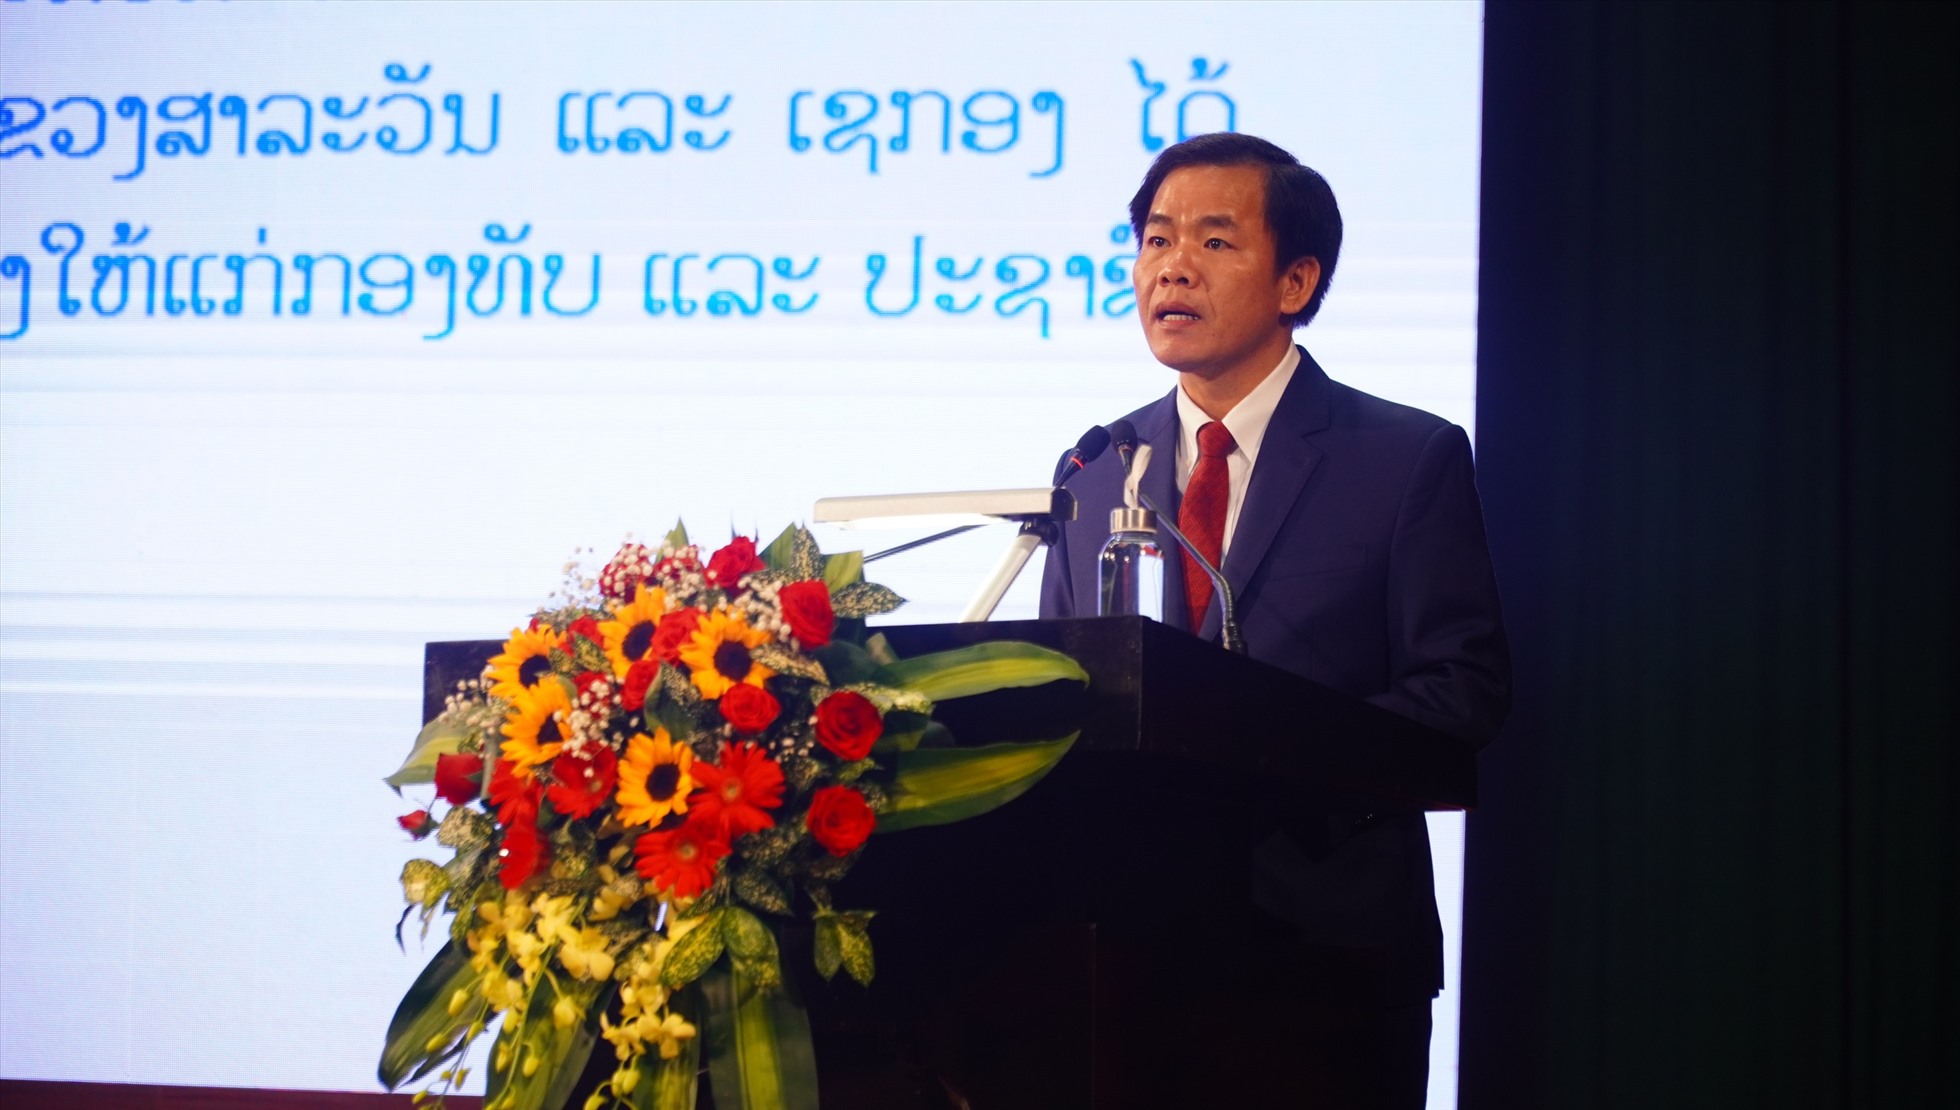 Chủ tịch UBND tỉnh Thừa Thiên Huế Nguyễn Văn Phương phát biểu tại buổi lễ. Ảnh: Ngọc Hiếu.